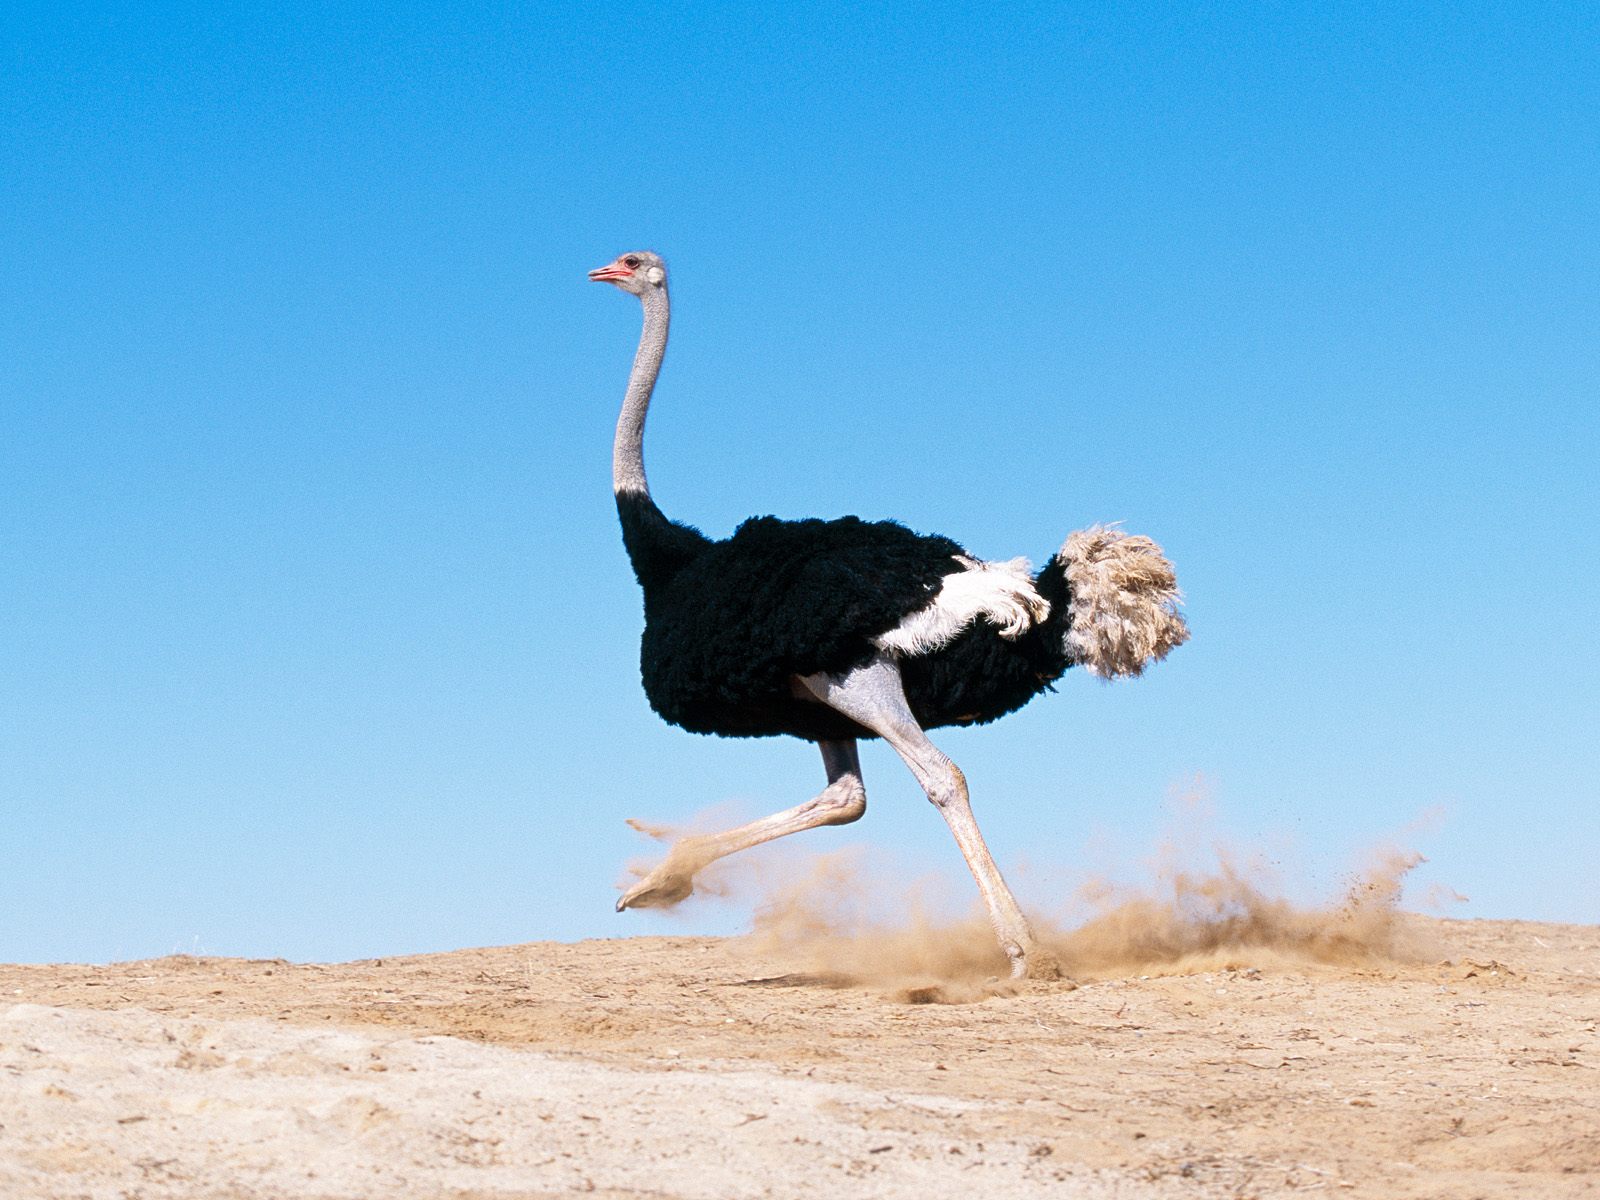 Ostrich is running